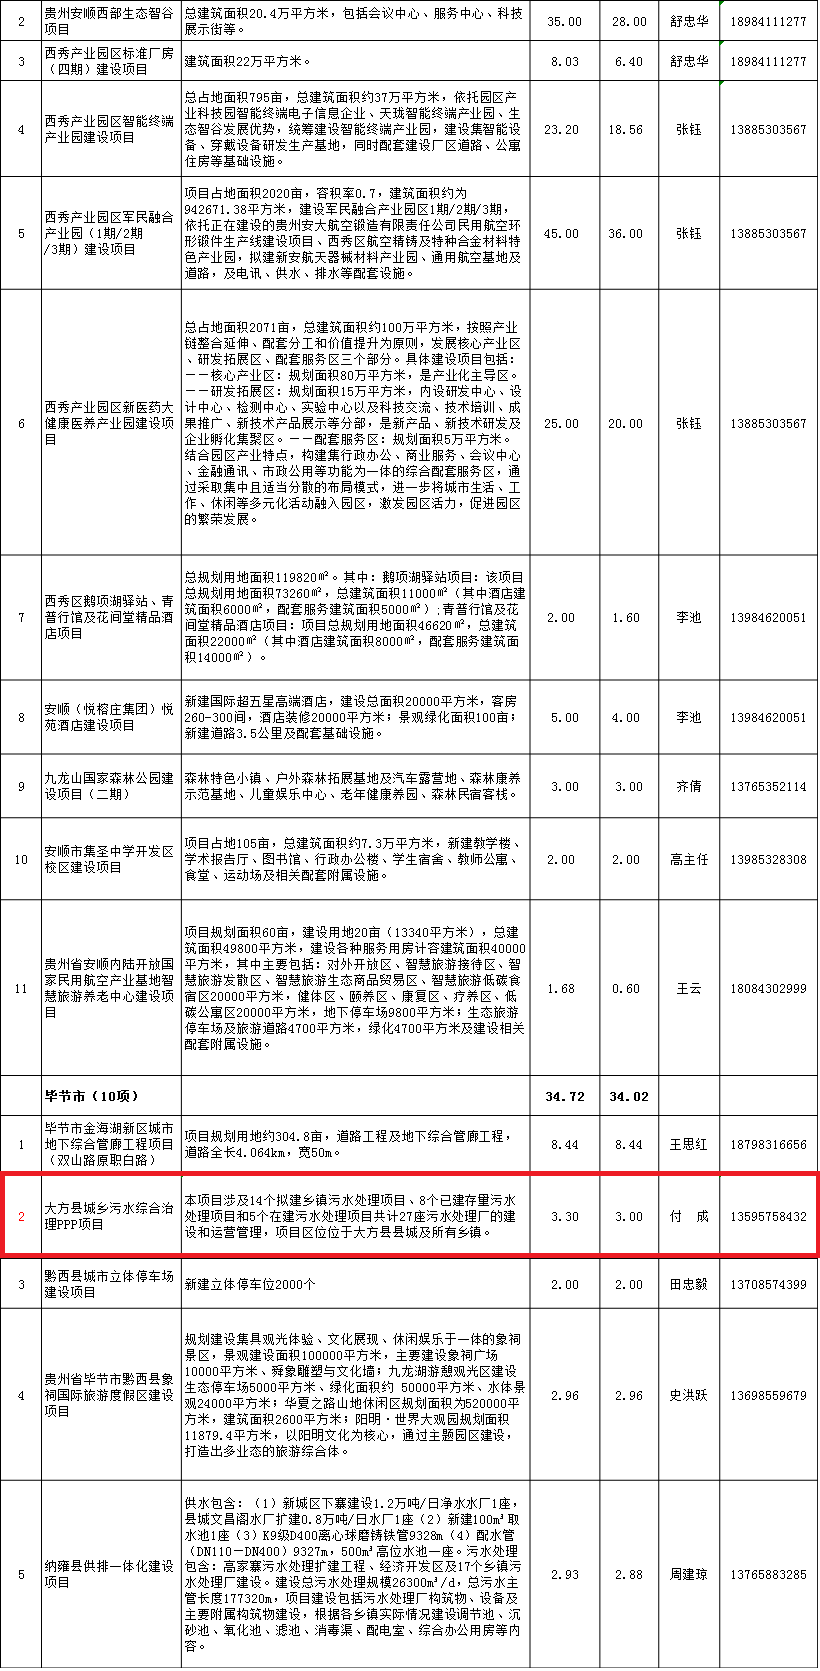 3贵州省2018年第二批重大民间投资项目工程包